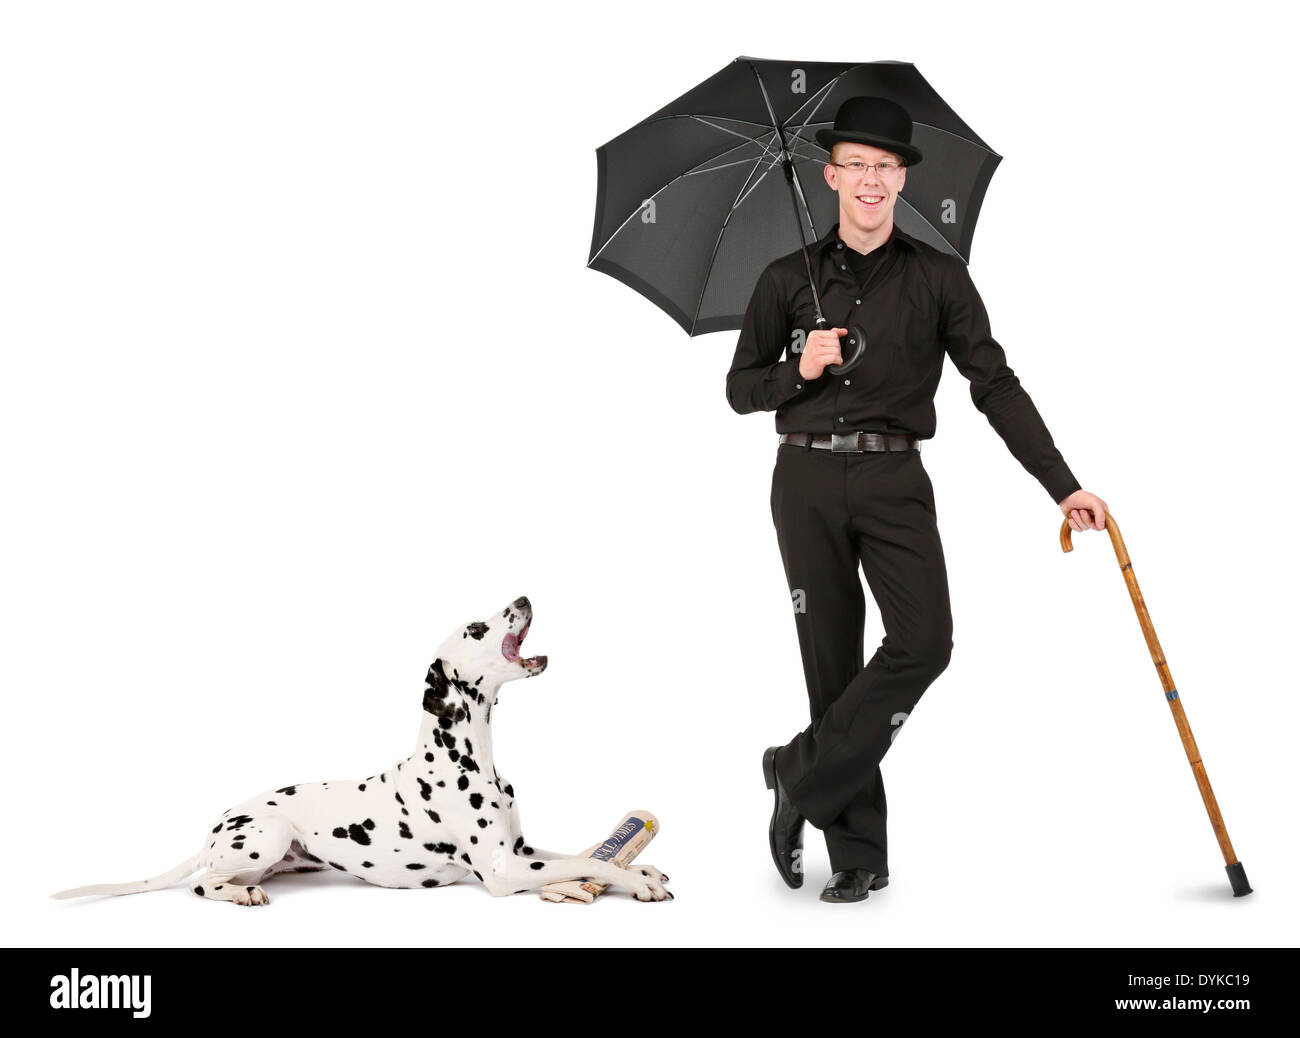 junger Mann mit Melone, Regenschirm und Gehstock, young man with bowler hat, umbrella and walking stick, Mann mit Dalmatiner; Sc Stock Photo